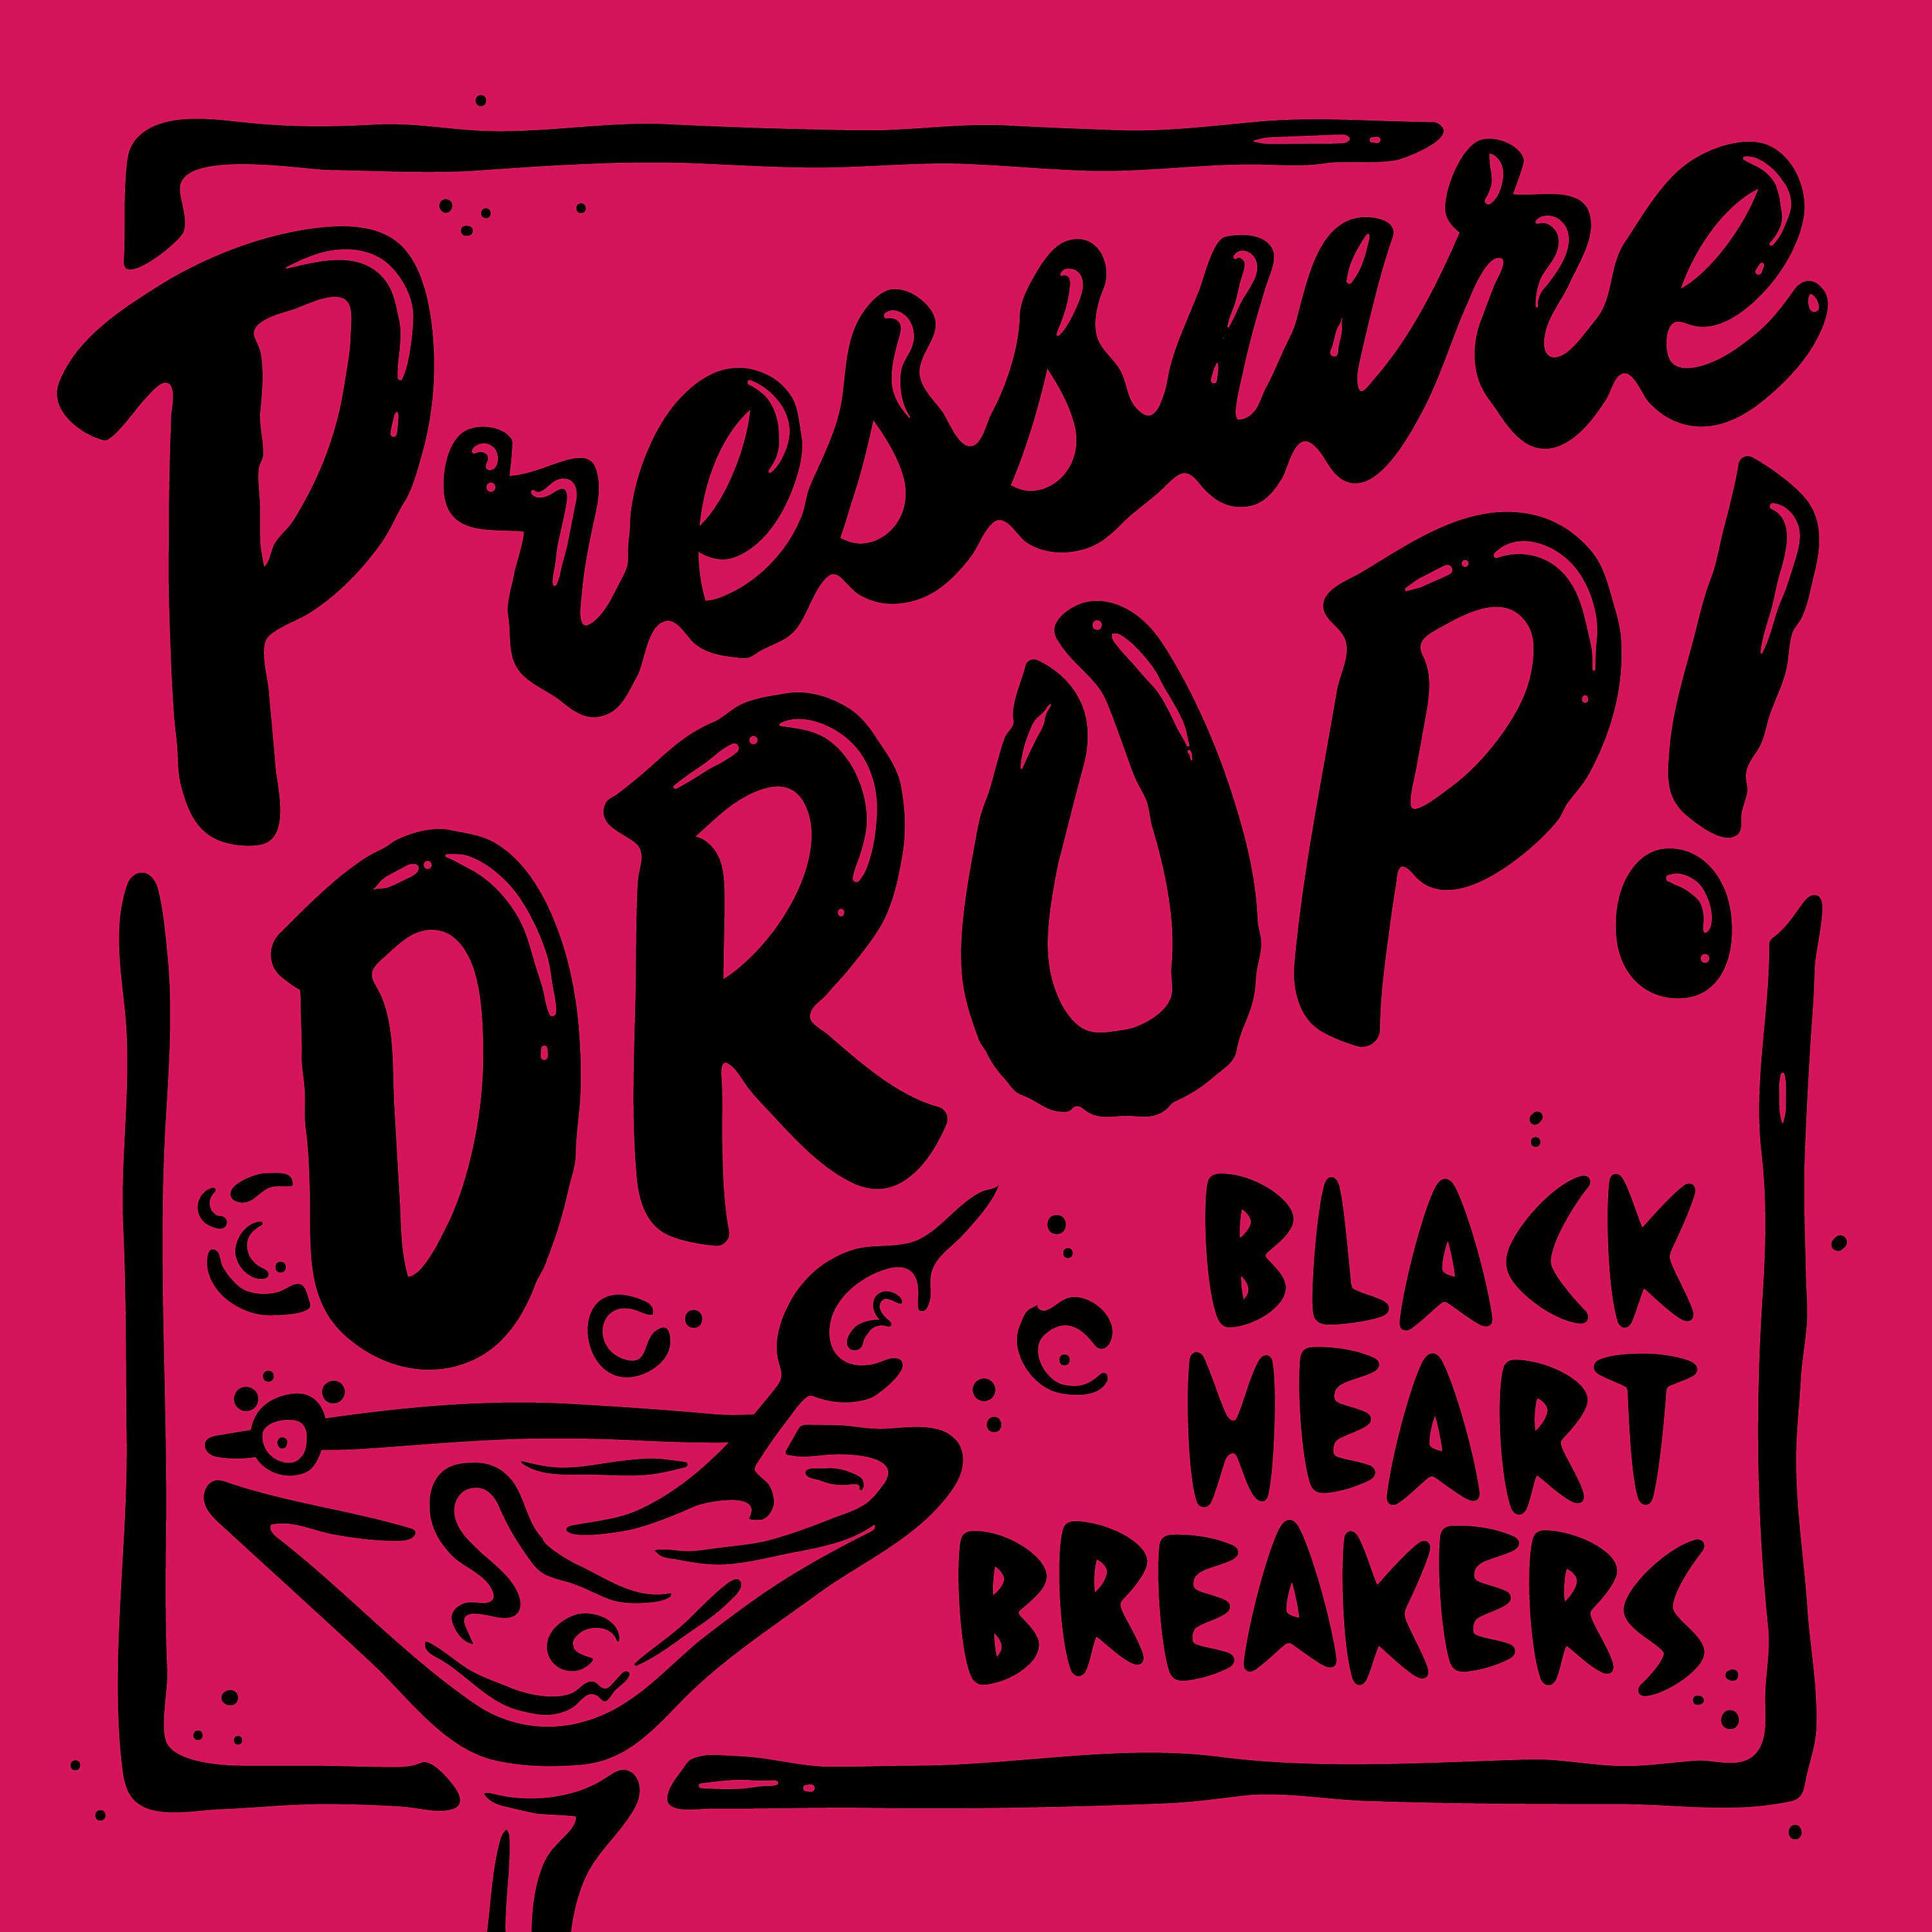 Постер альбома Pressure Drop